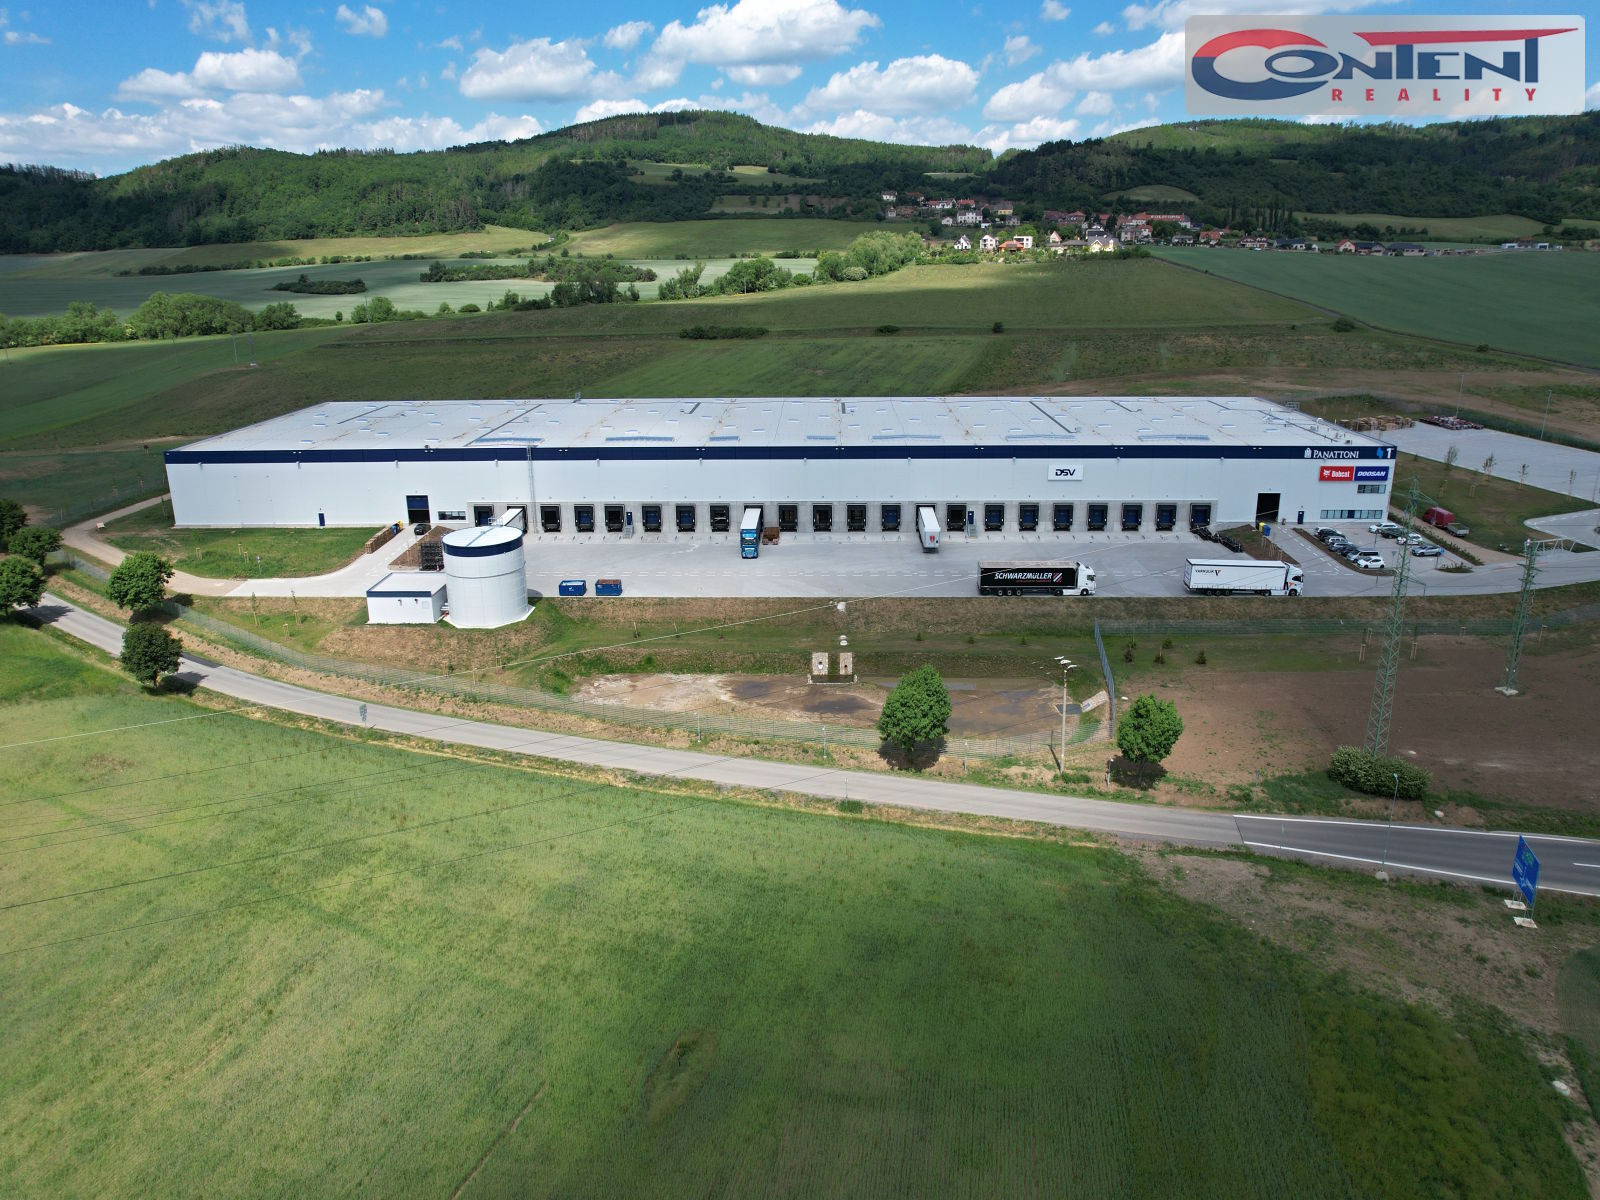 Pronájem novostavby skladu, výrobních prostor 23.000 m², Zdice, D5